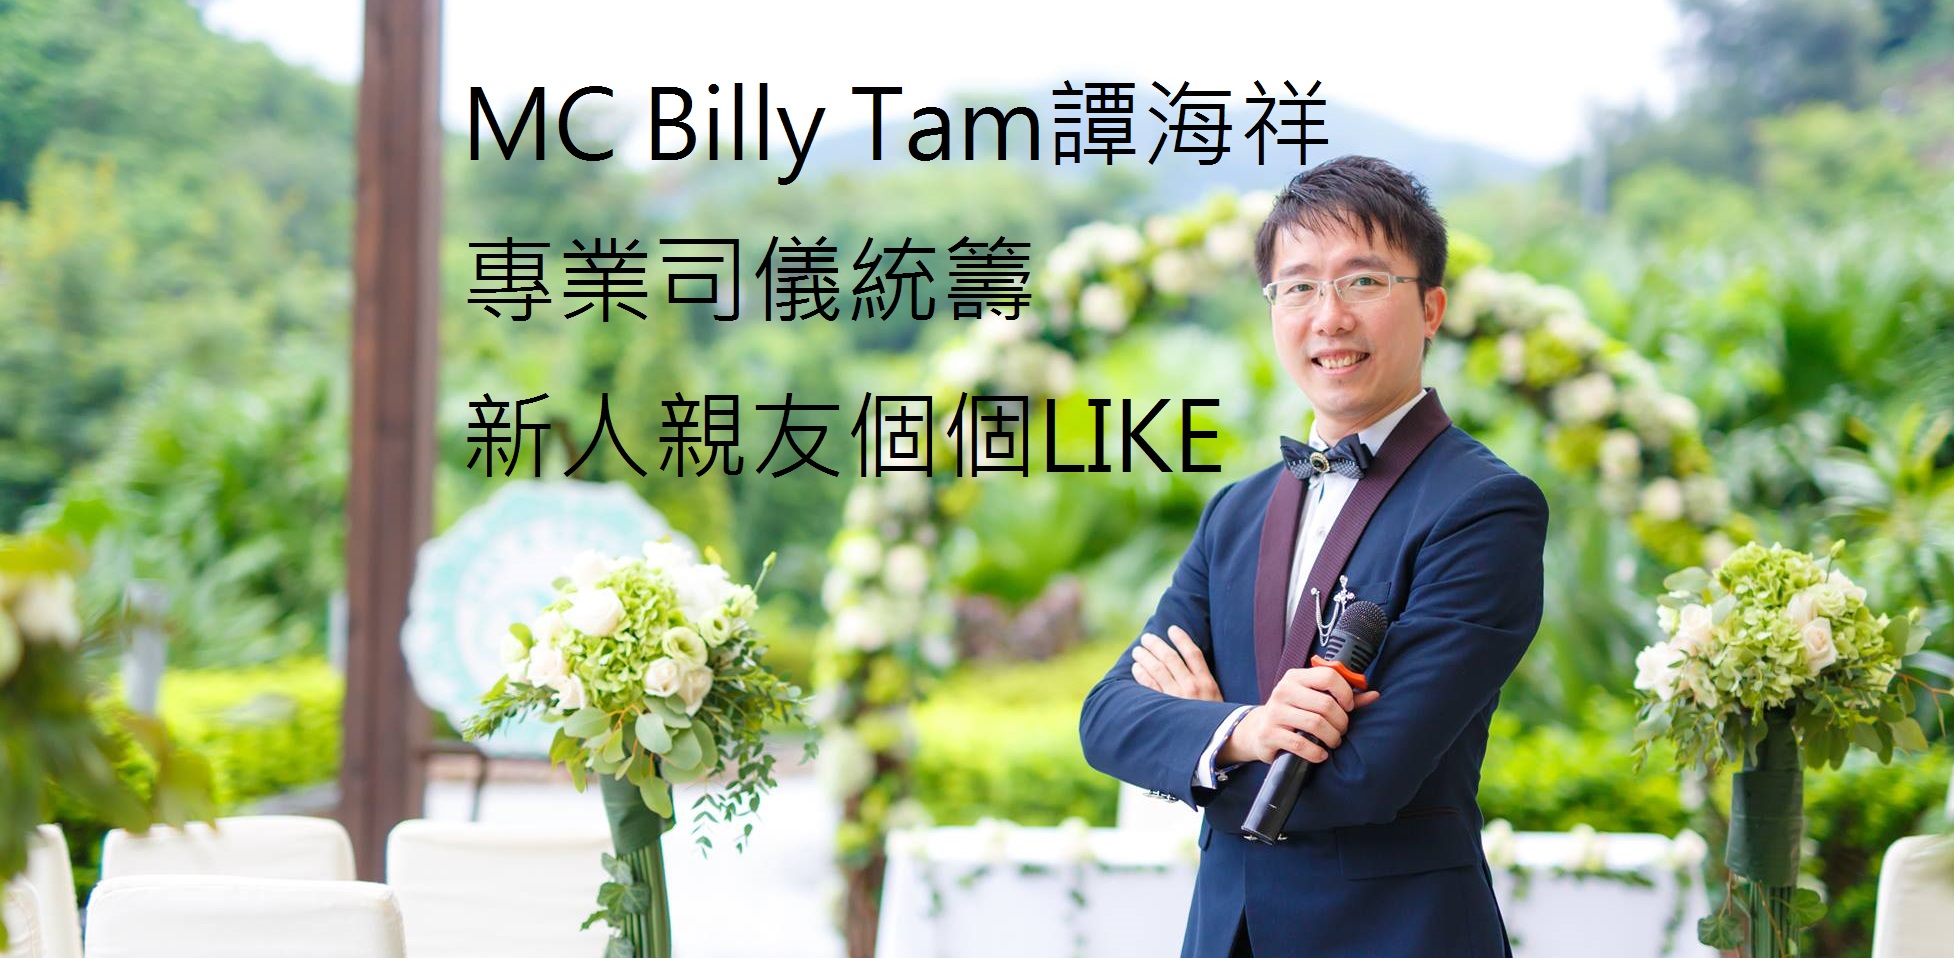 婚宴司儀推介: MC Billy Tam譚海祥